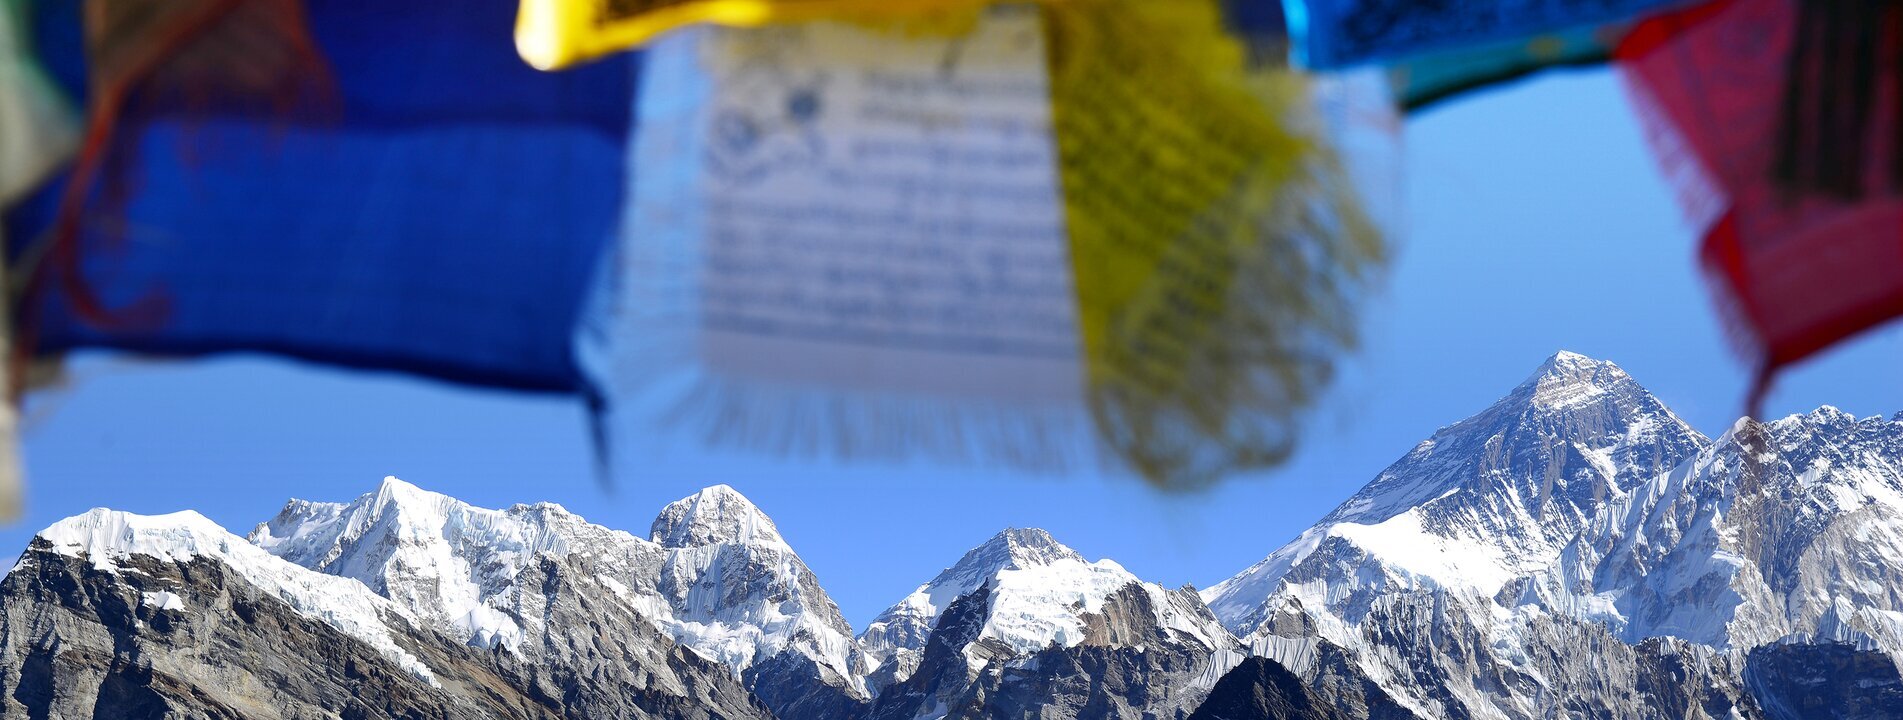 Traumreise nach Tibet